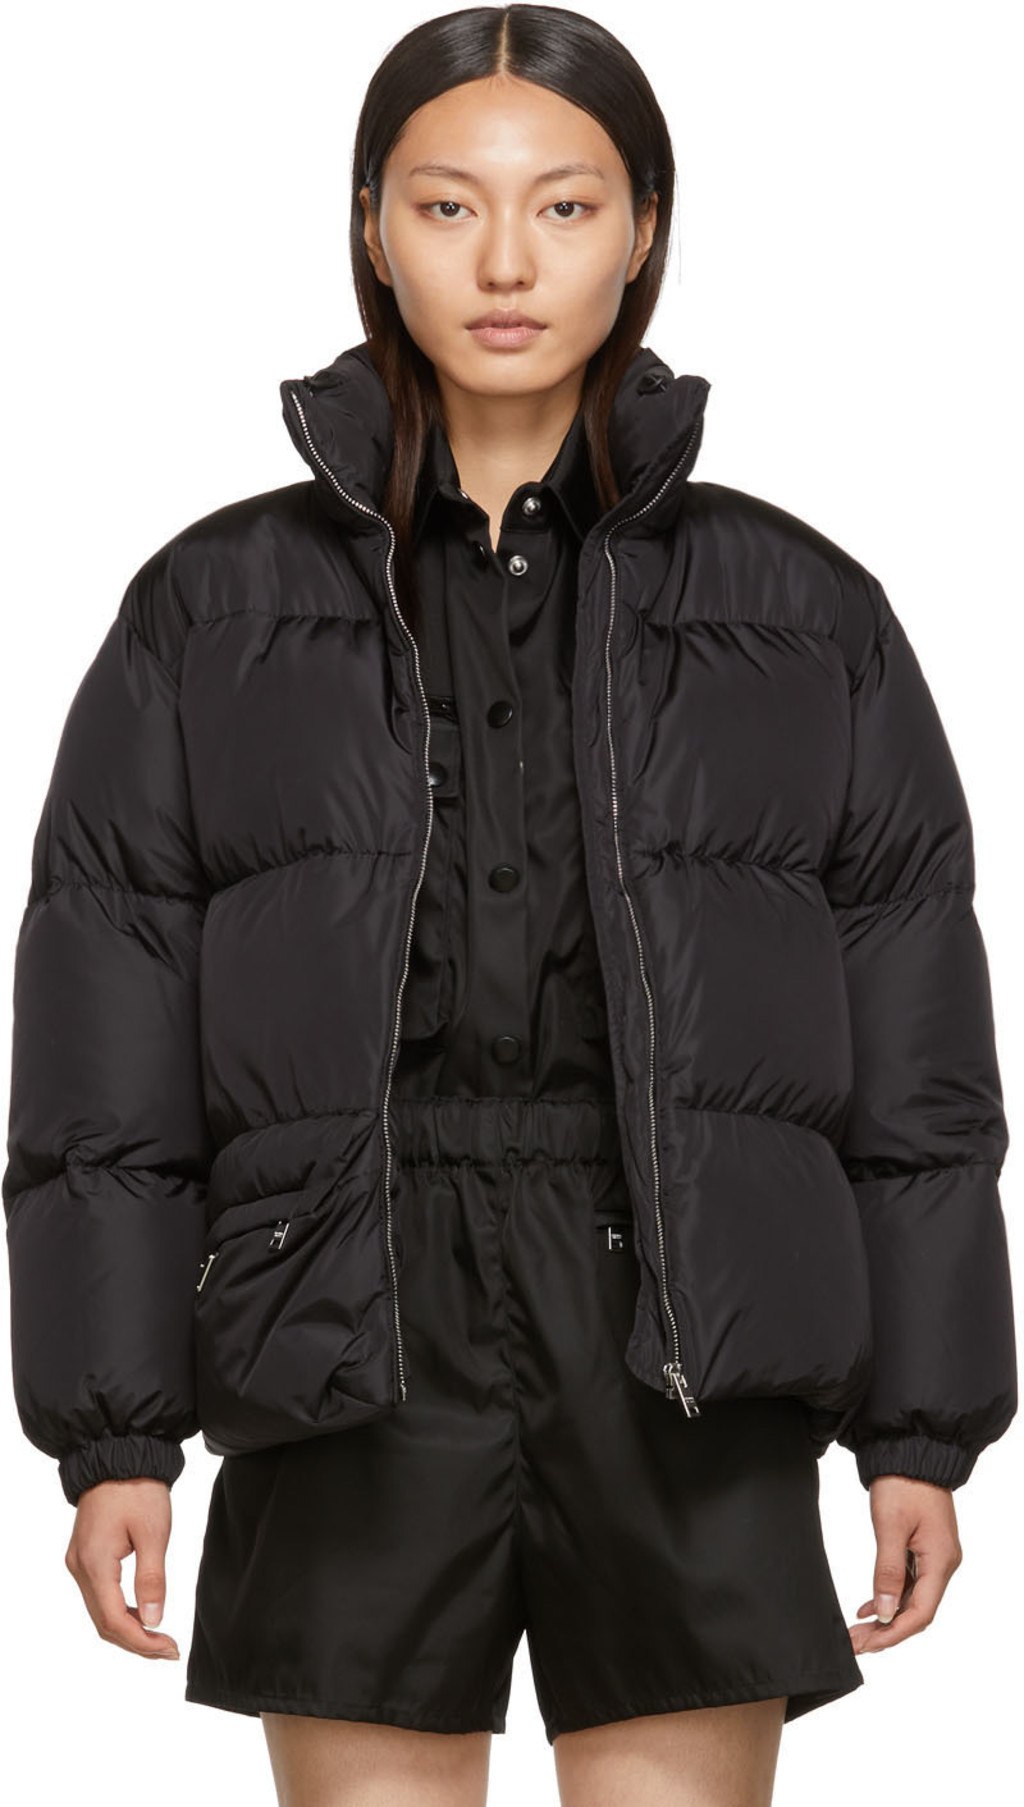 Пуховик цум. Prada Belt Puffer Jacket. Prada 290675 пуховик. Пуховик Прада Winter Coat. Prada куртка женская черная.